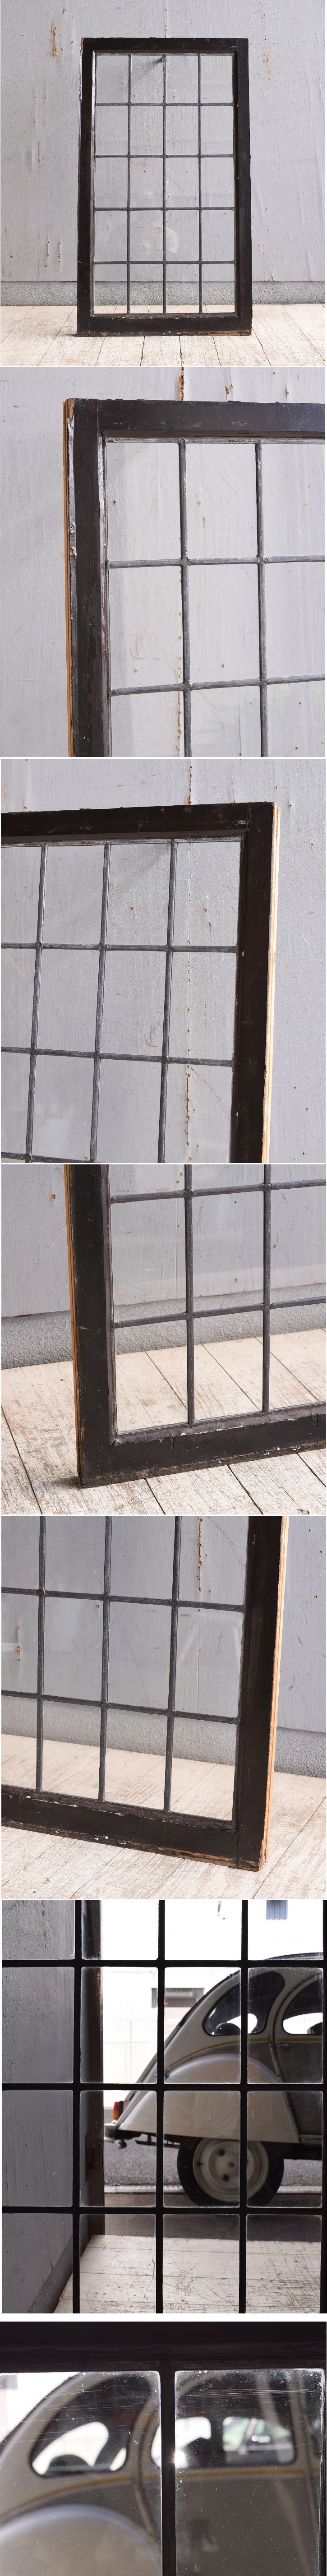 イギリス アンティーク 窓 無色透明 10101